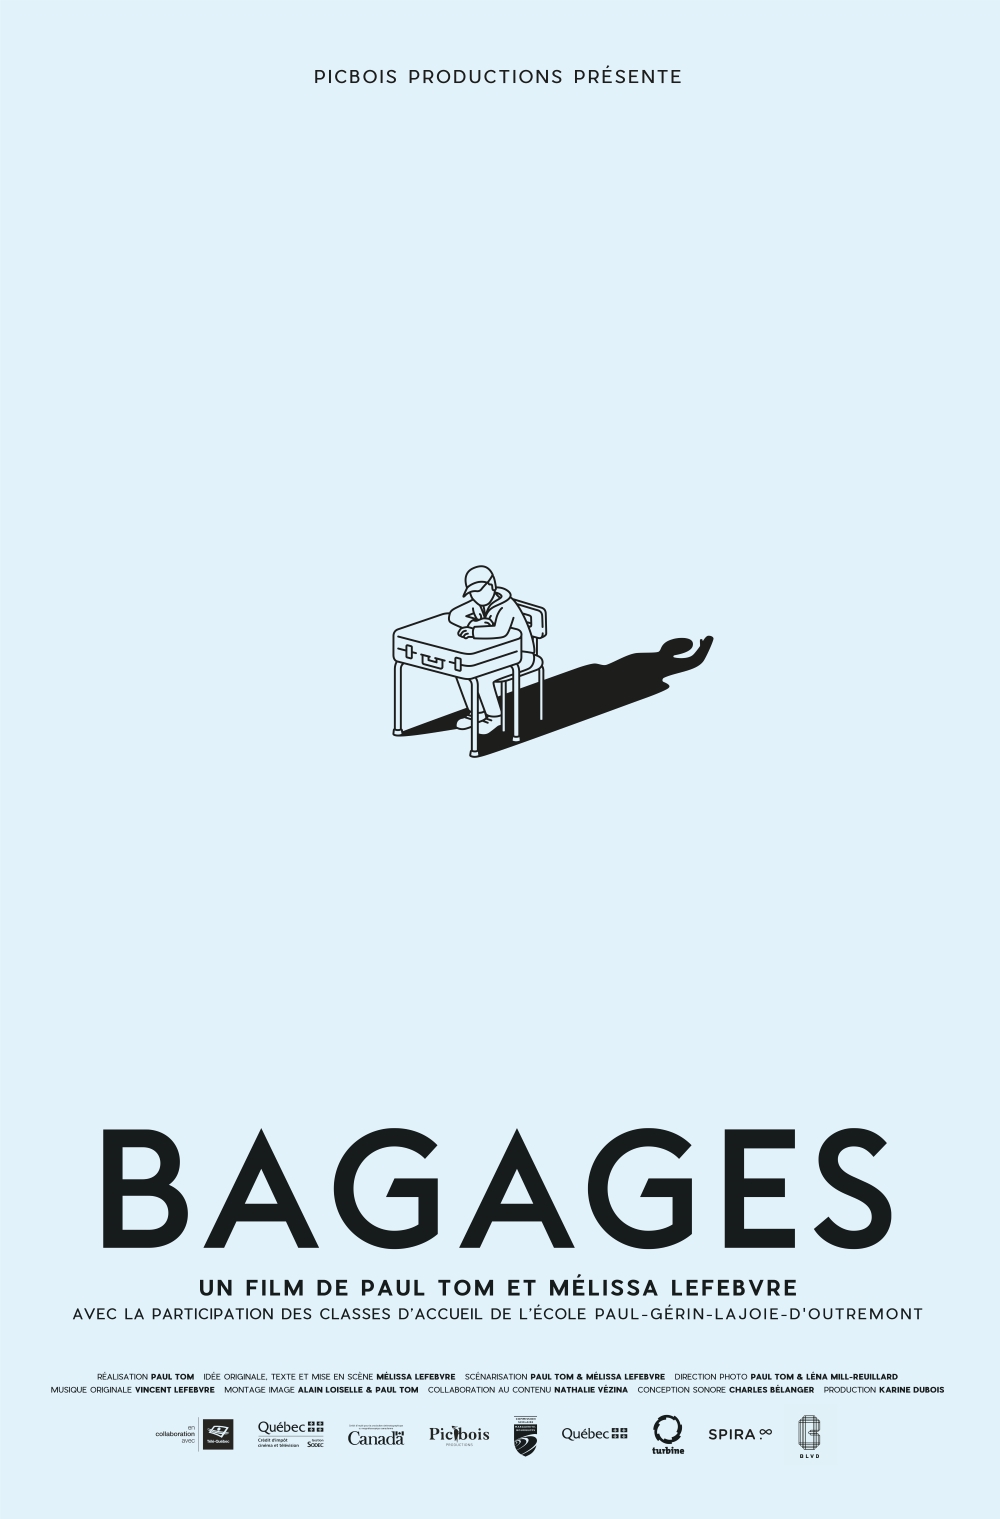 alt="bagages"